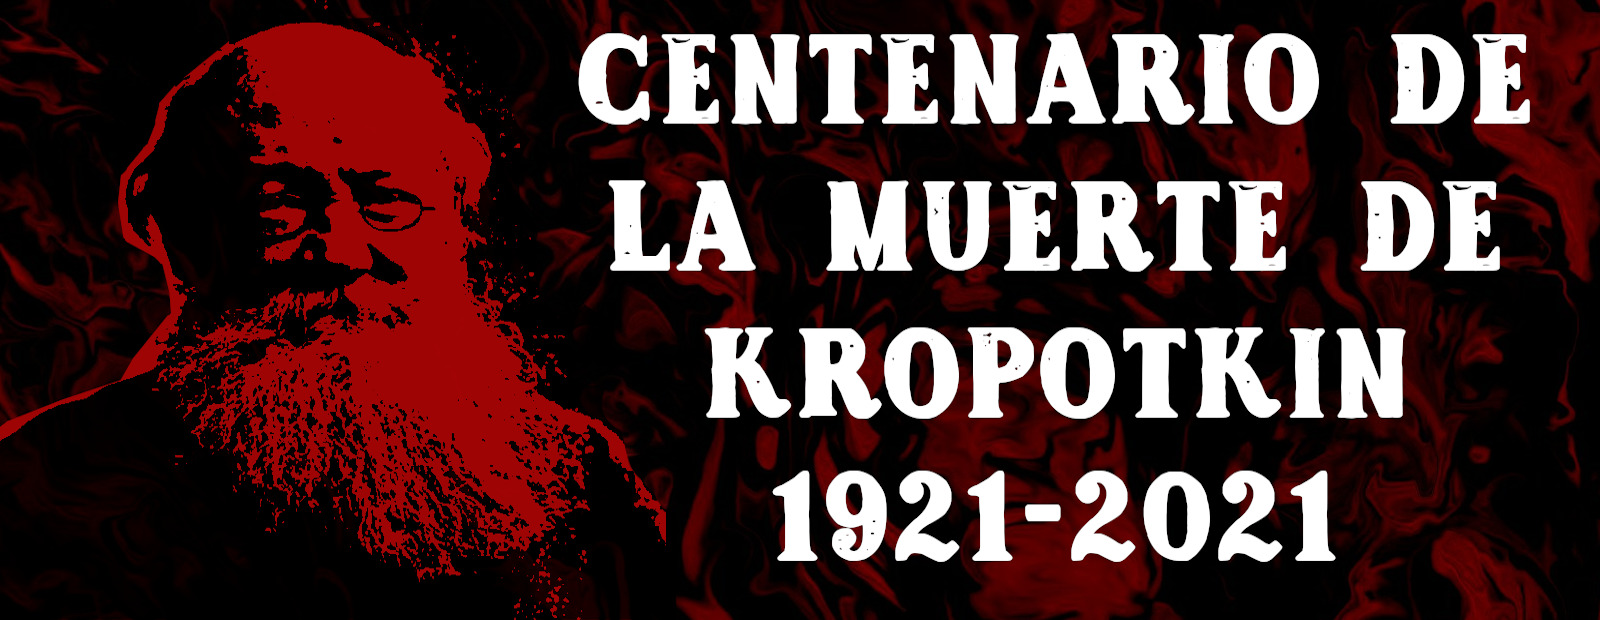 Centenario de la muerte de Kropotkin 1921-2021